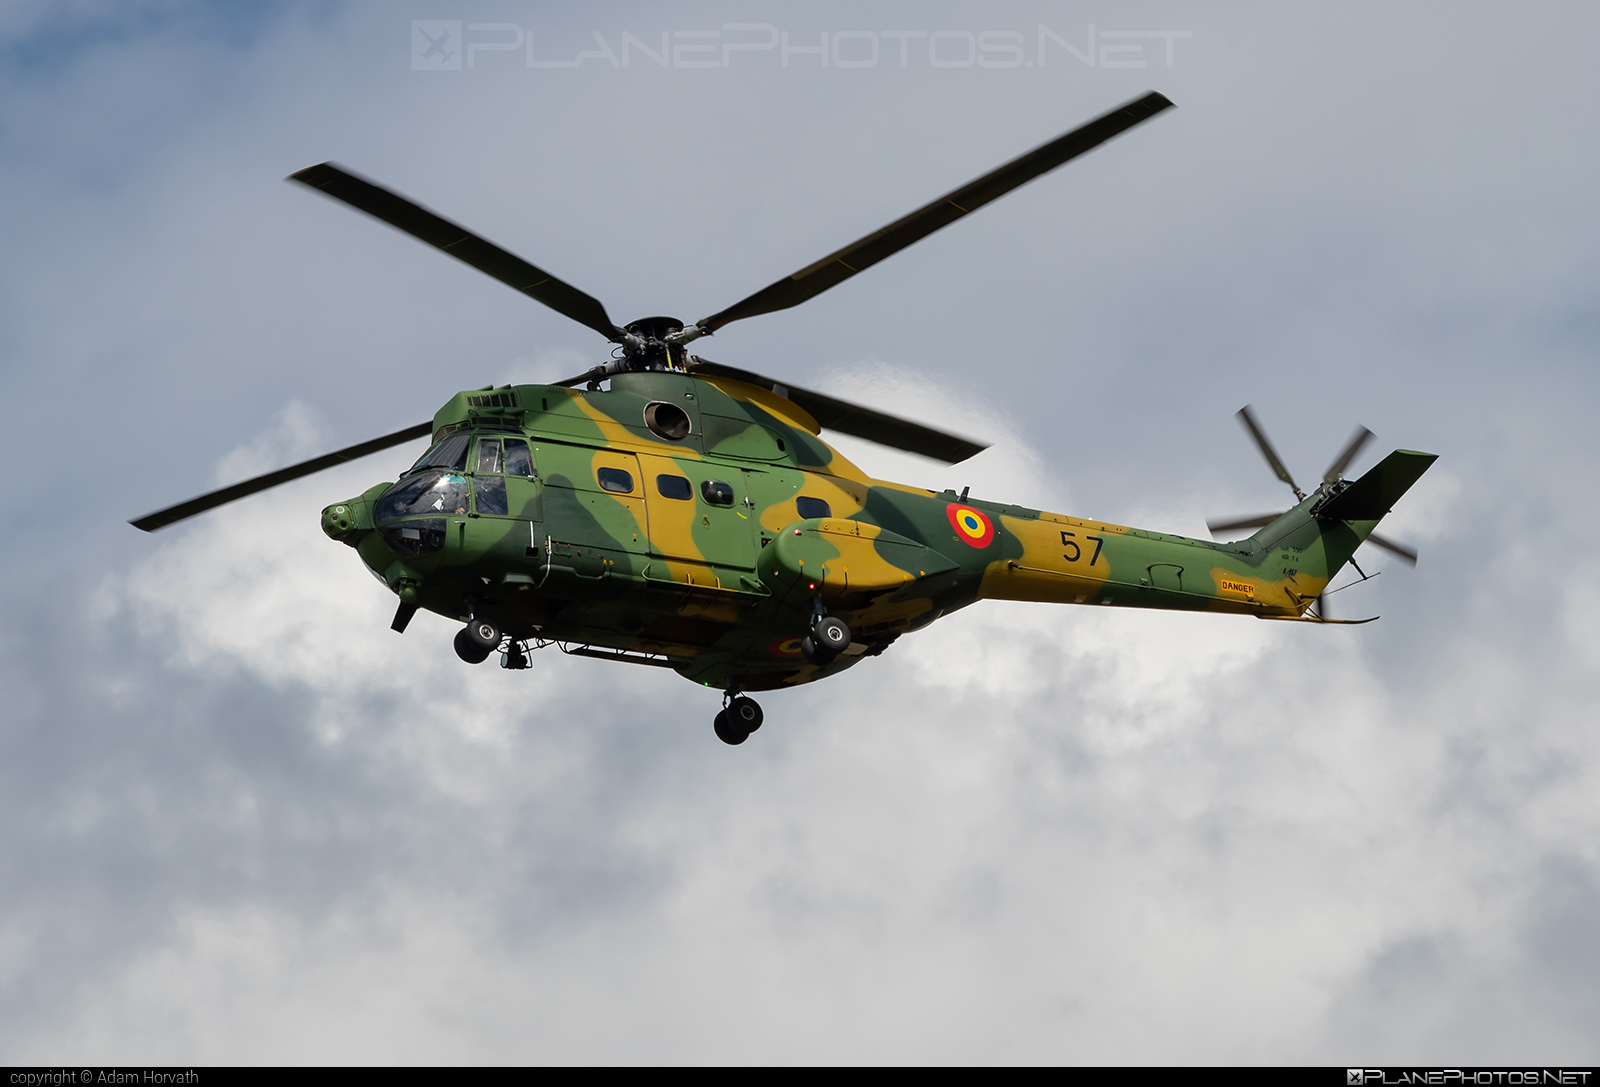 IAR 330L Puma SOCAT - 57 operated by Forţele Aeriene Române (Romanian Air Force) #forteleaerieneromane #iar #iar330 #iar330l #iar330lpuma #iar330lpumasocat #iar330puma #industriaAeronauticaRomana #romanianairforce